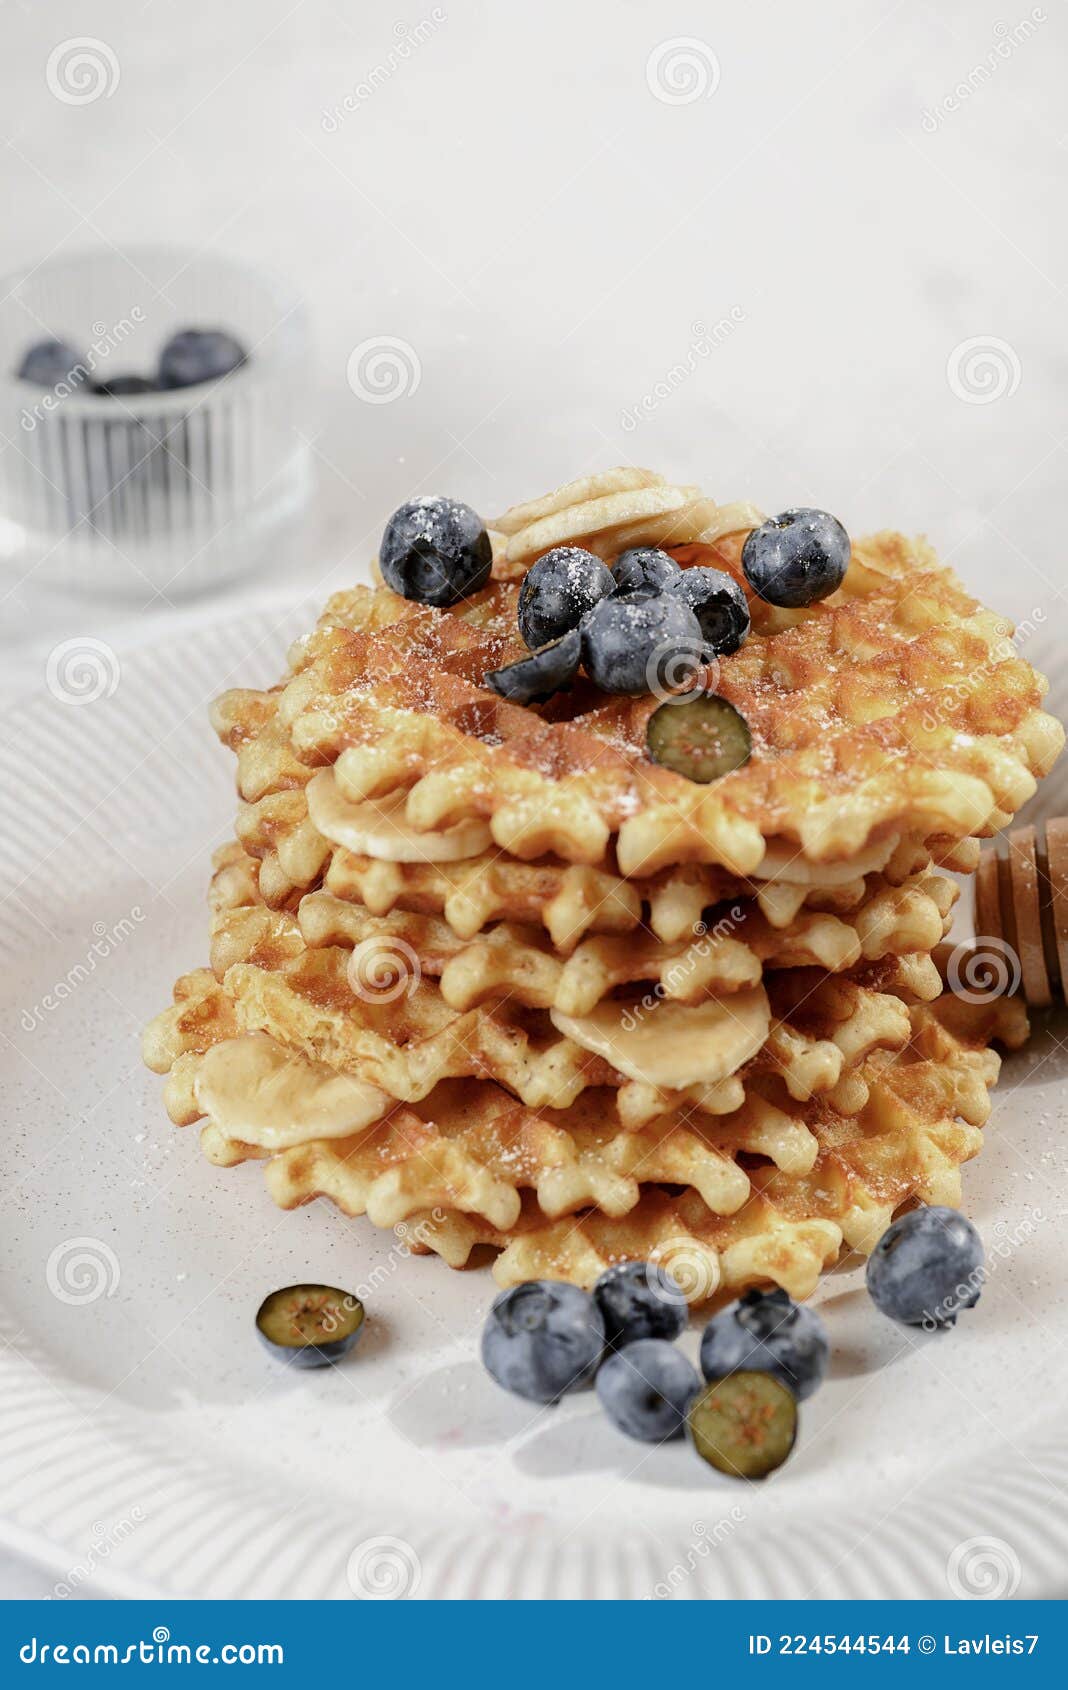 比利时华夫饼配蓝莓和薄荷盘. 早餐 向量例证. 插画 包括有 发狂, 蓝莓, 图标, 美食, 蓝色, 咖啡馆 - 209068661